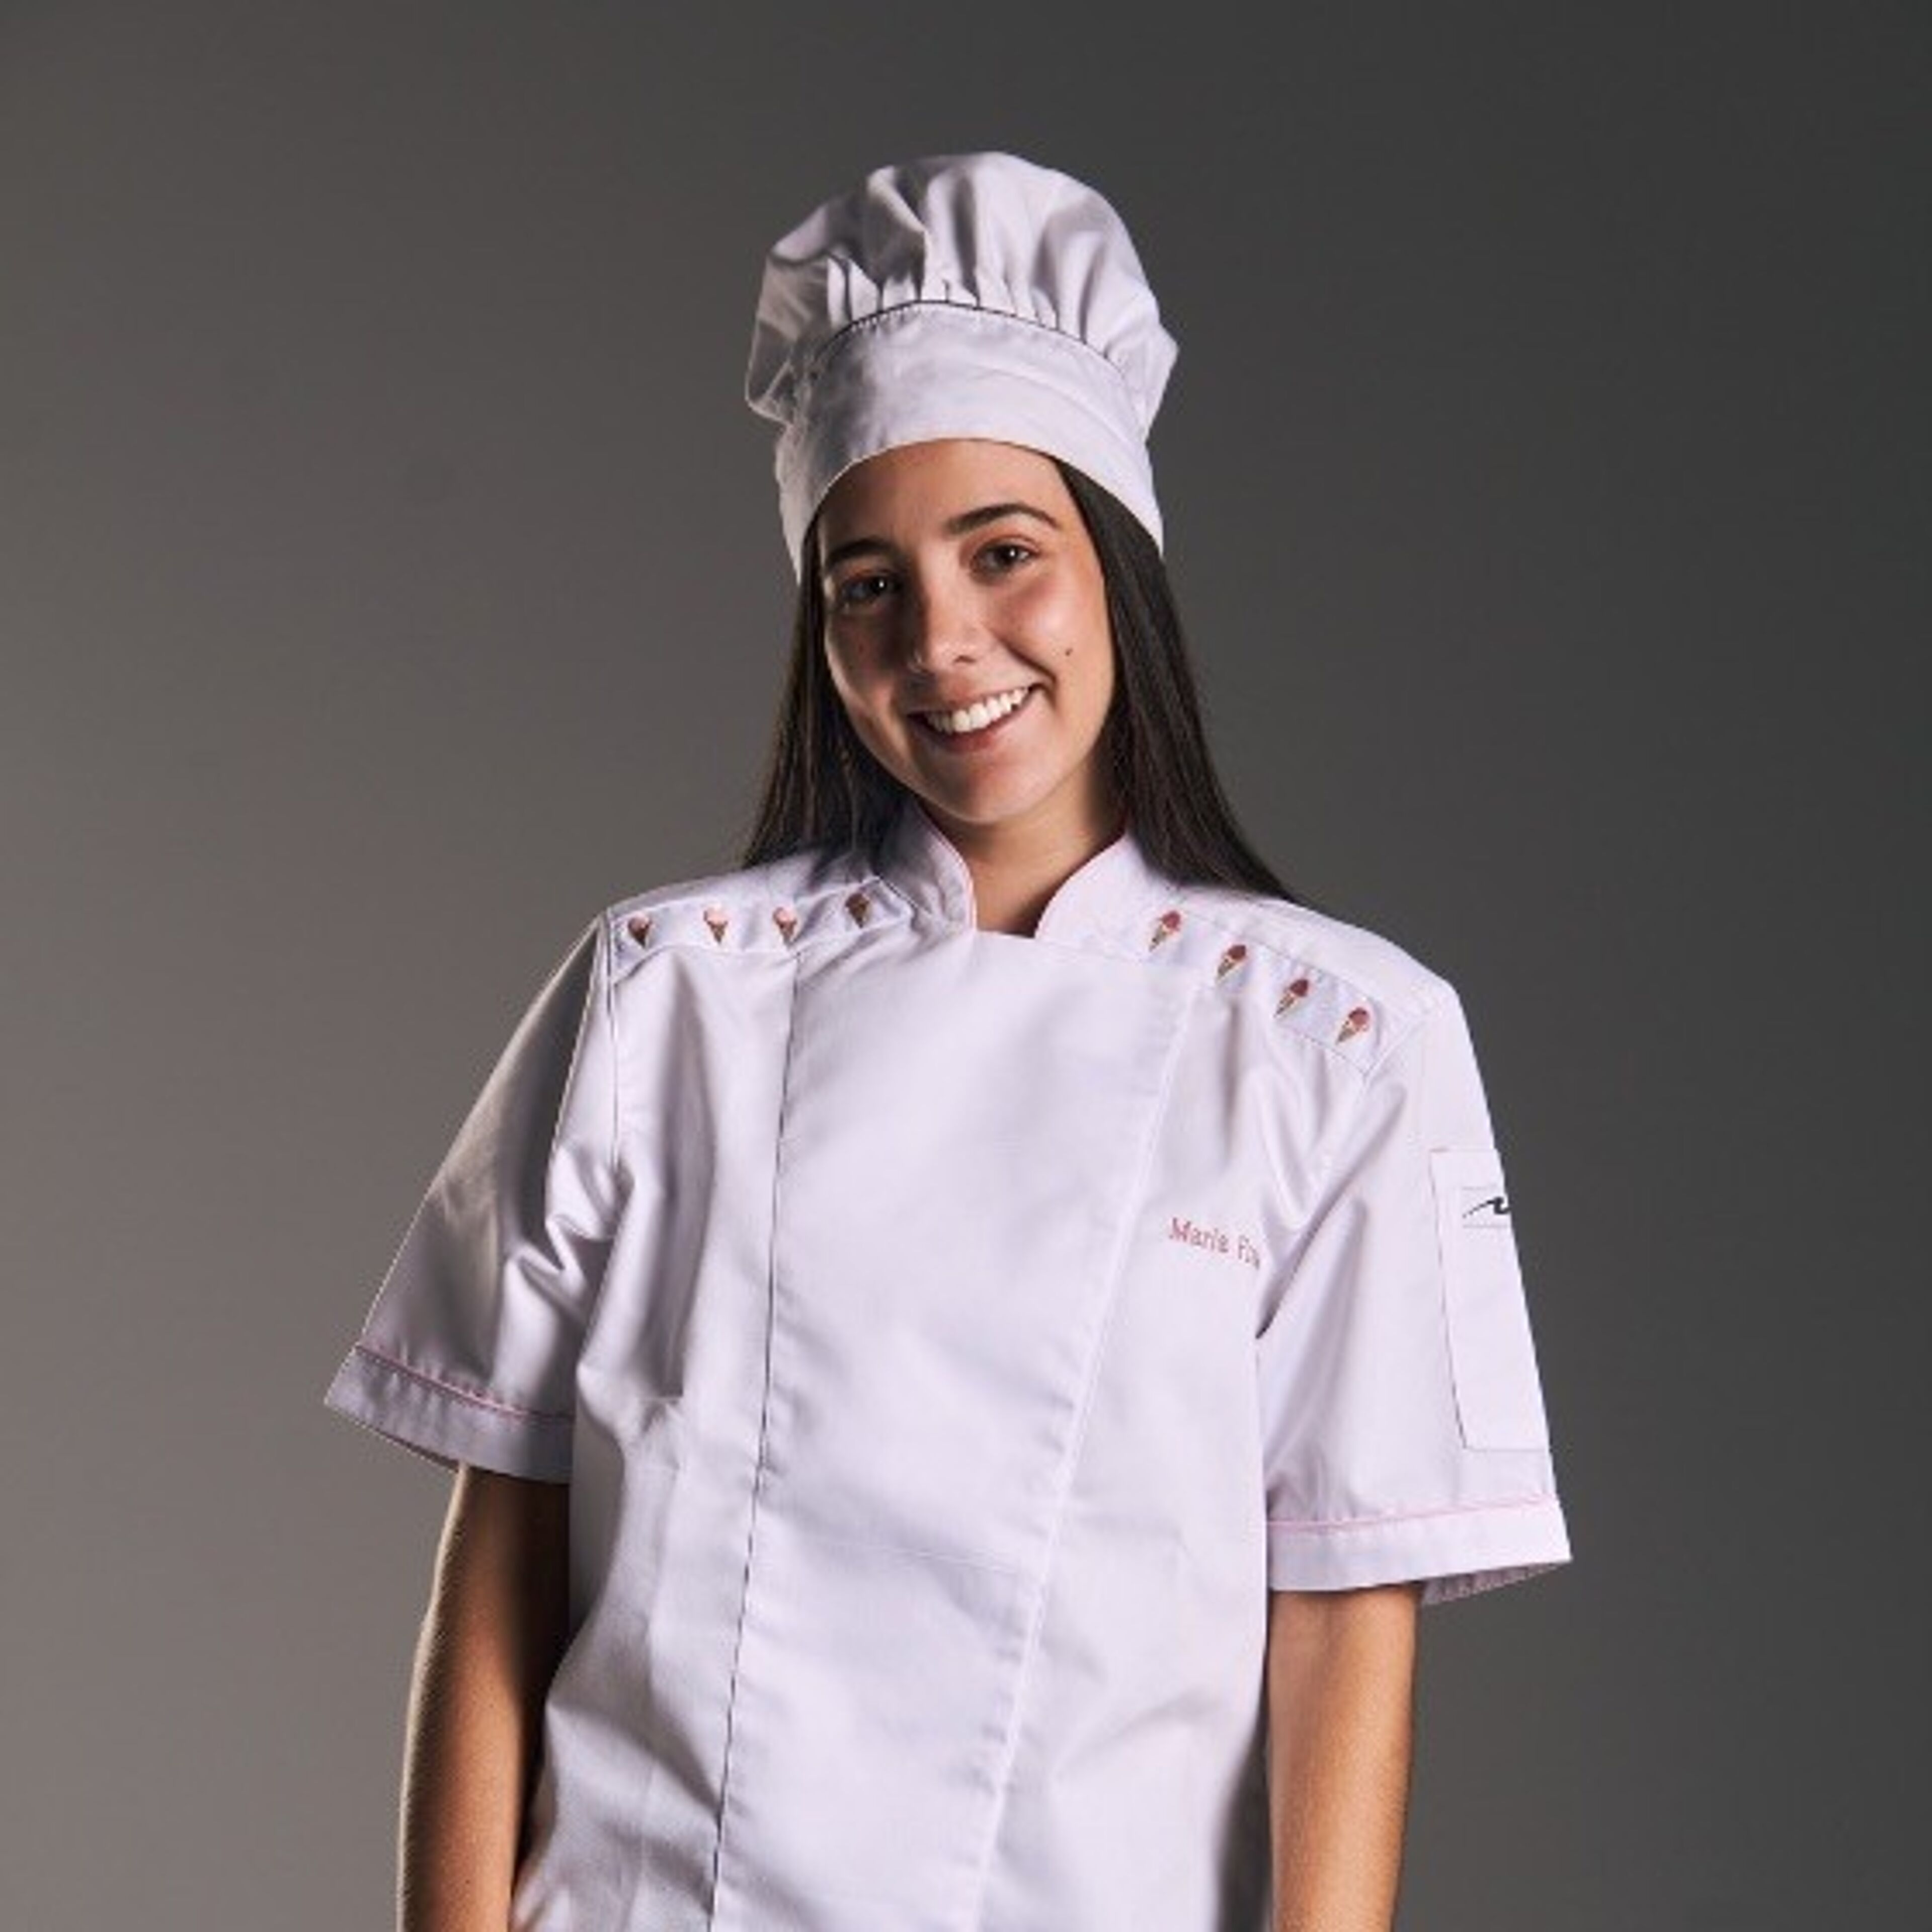 Una joven sonriente vestida con un uniforme blanco de chef profesional y un gorro, señalando su papel en las artes culinarias.